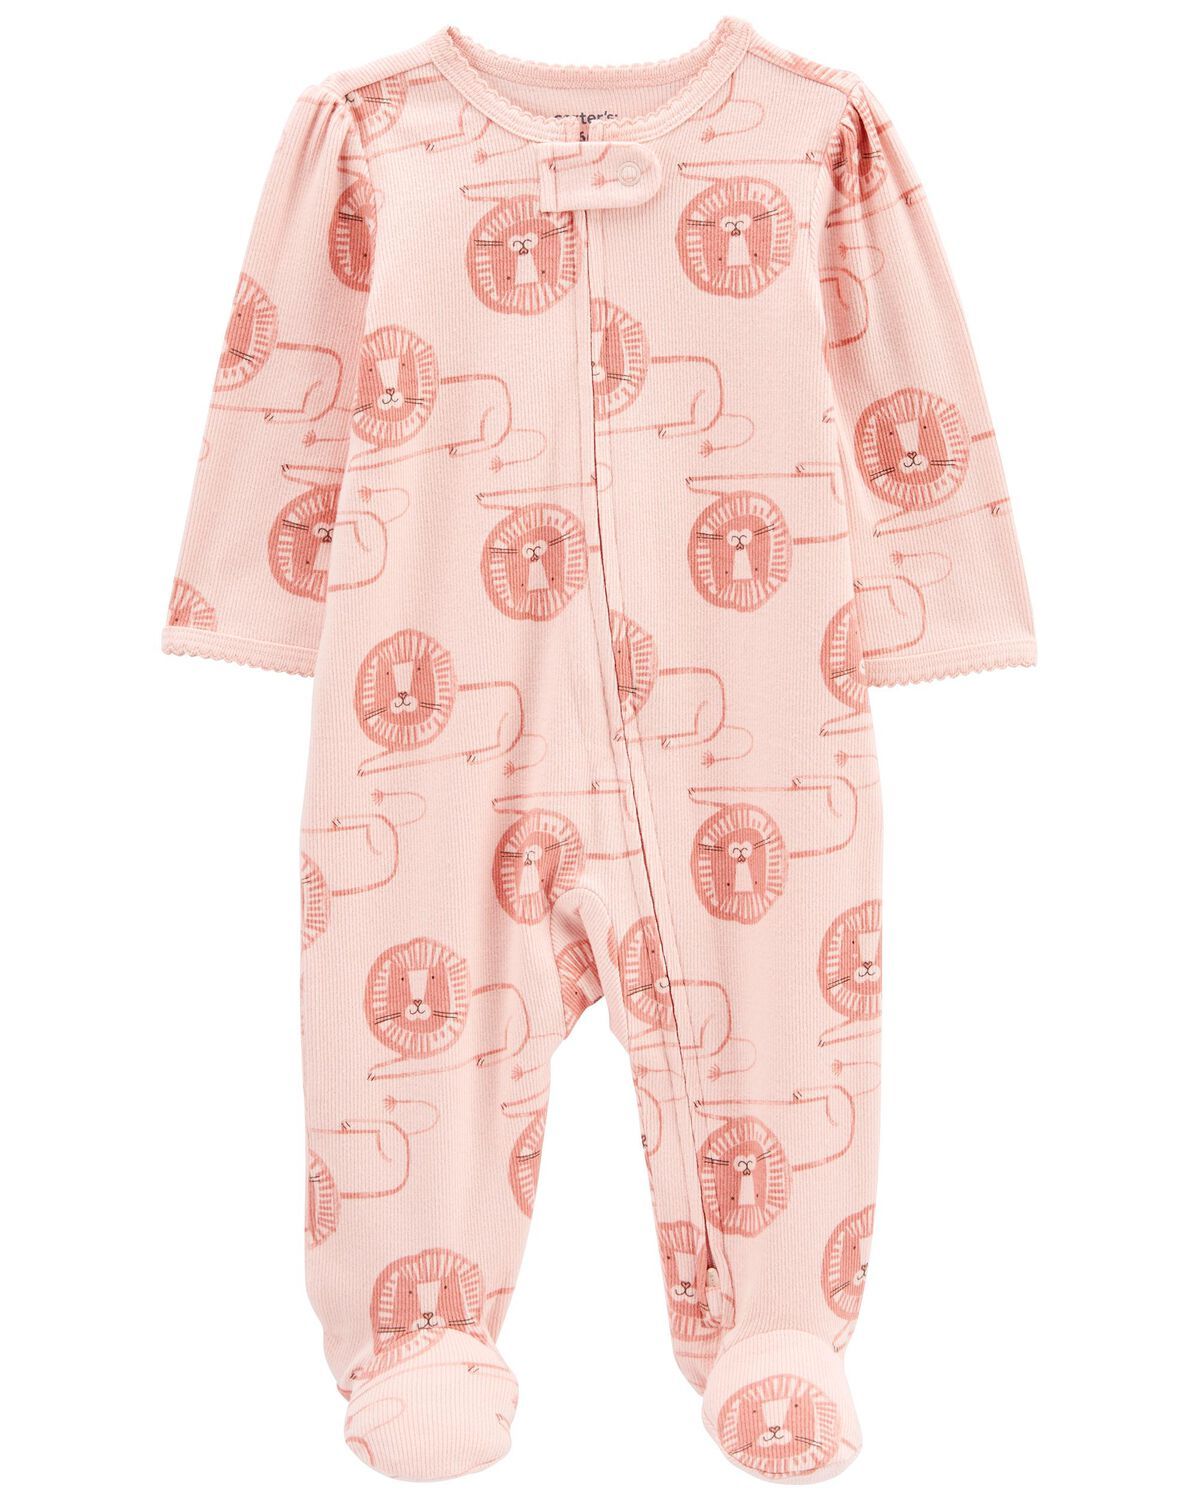 Baby Lion 2-Way Zip Cotton Blend Sleep & Play Pajamas | Carter's